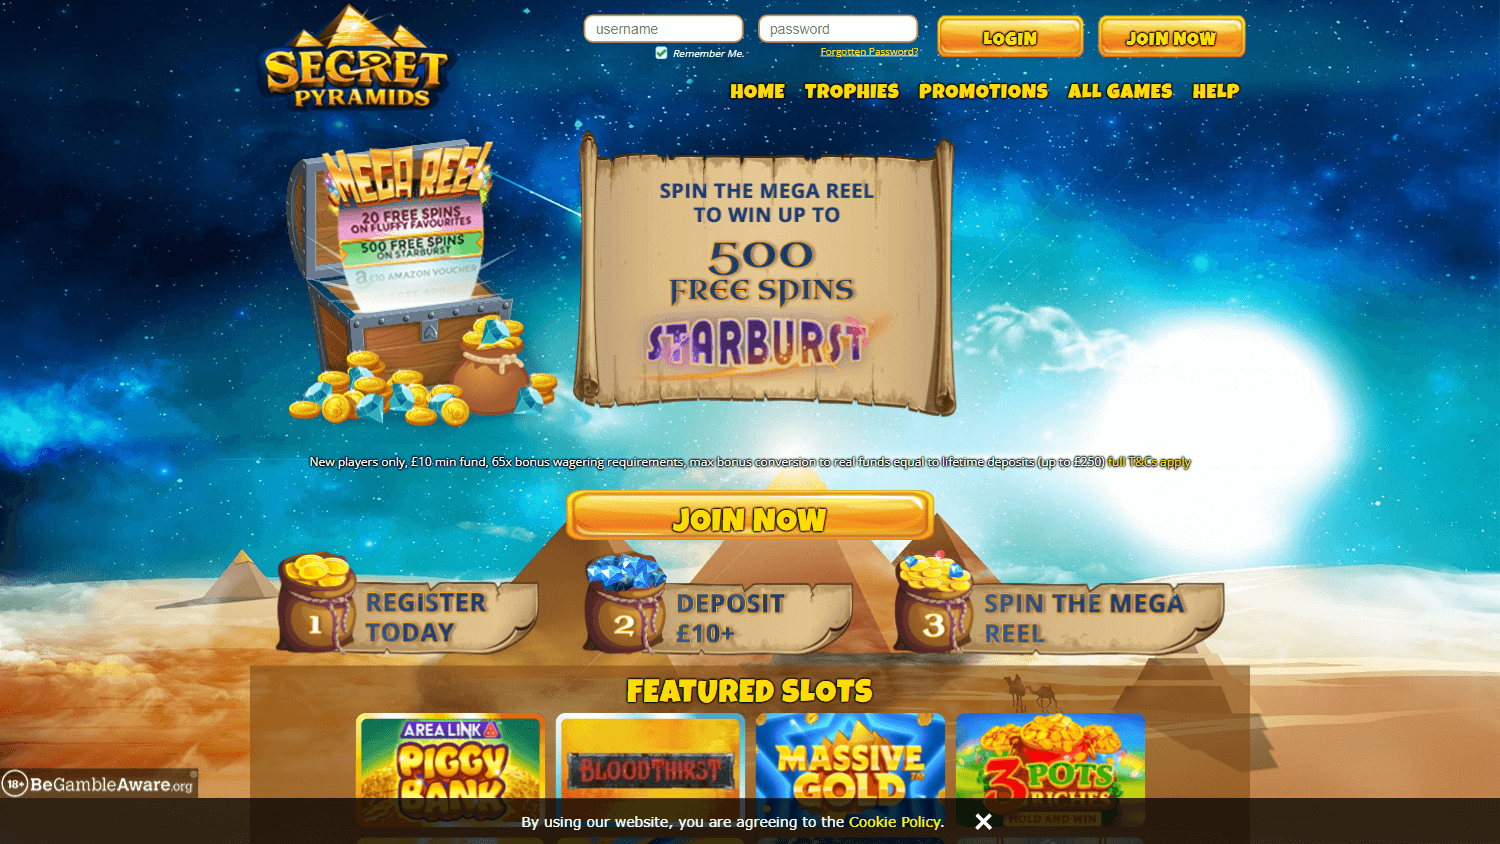 secret_pyramids_casino_homepage_desktop